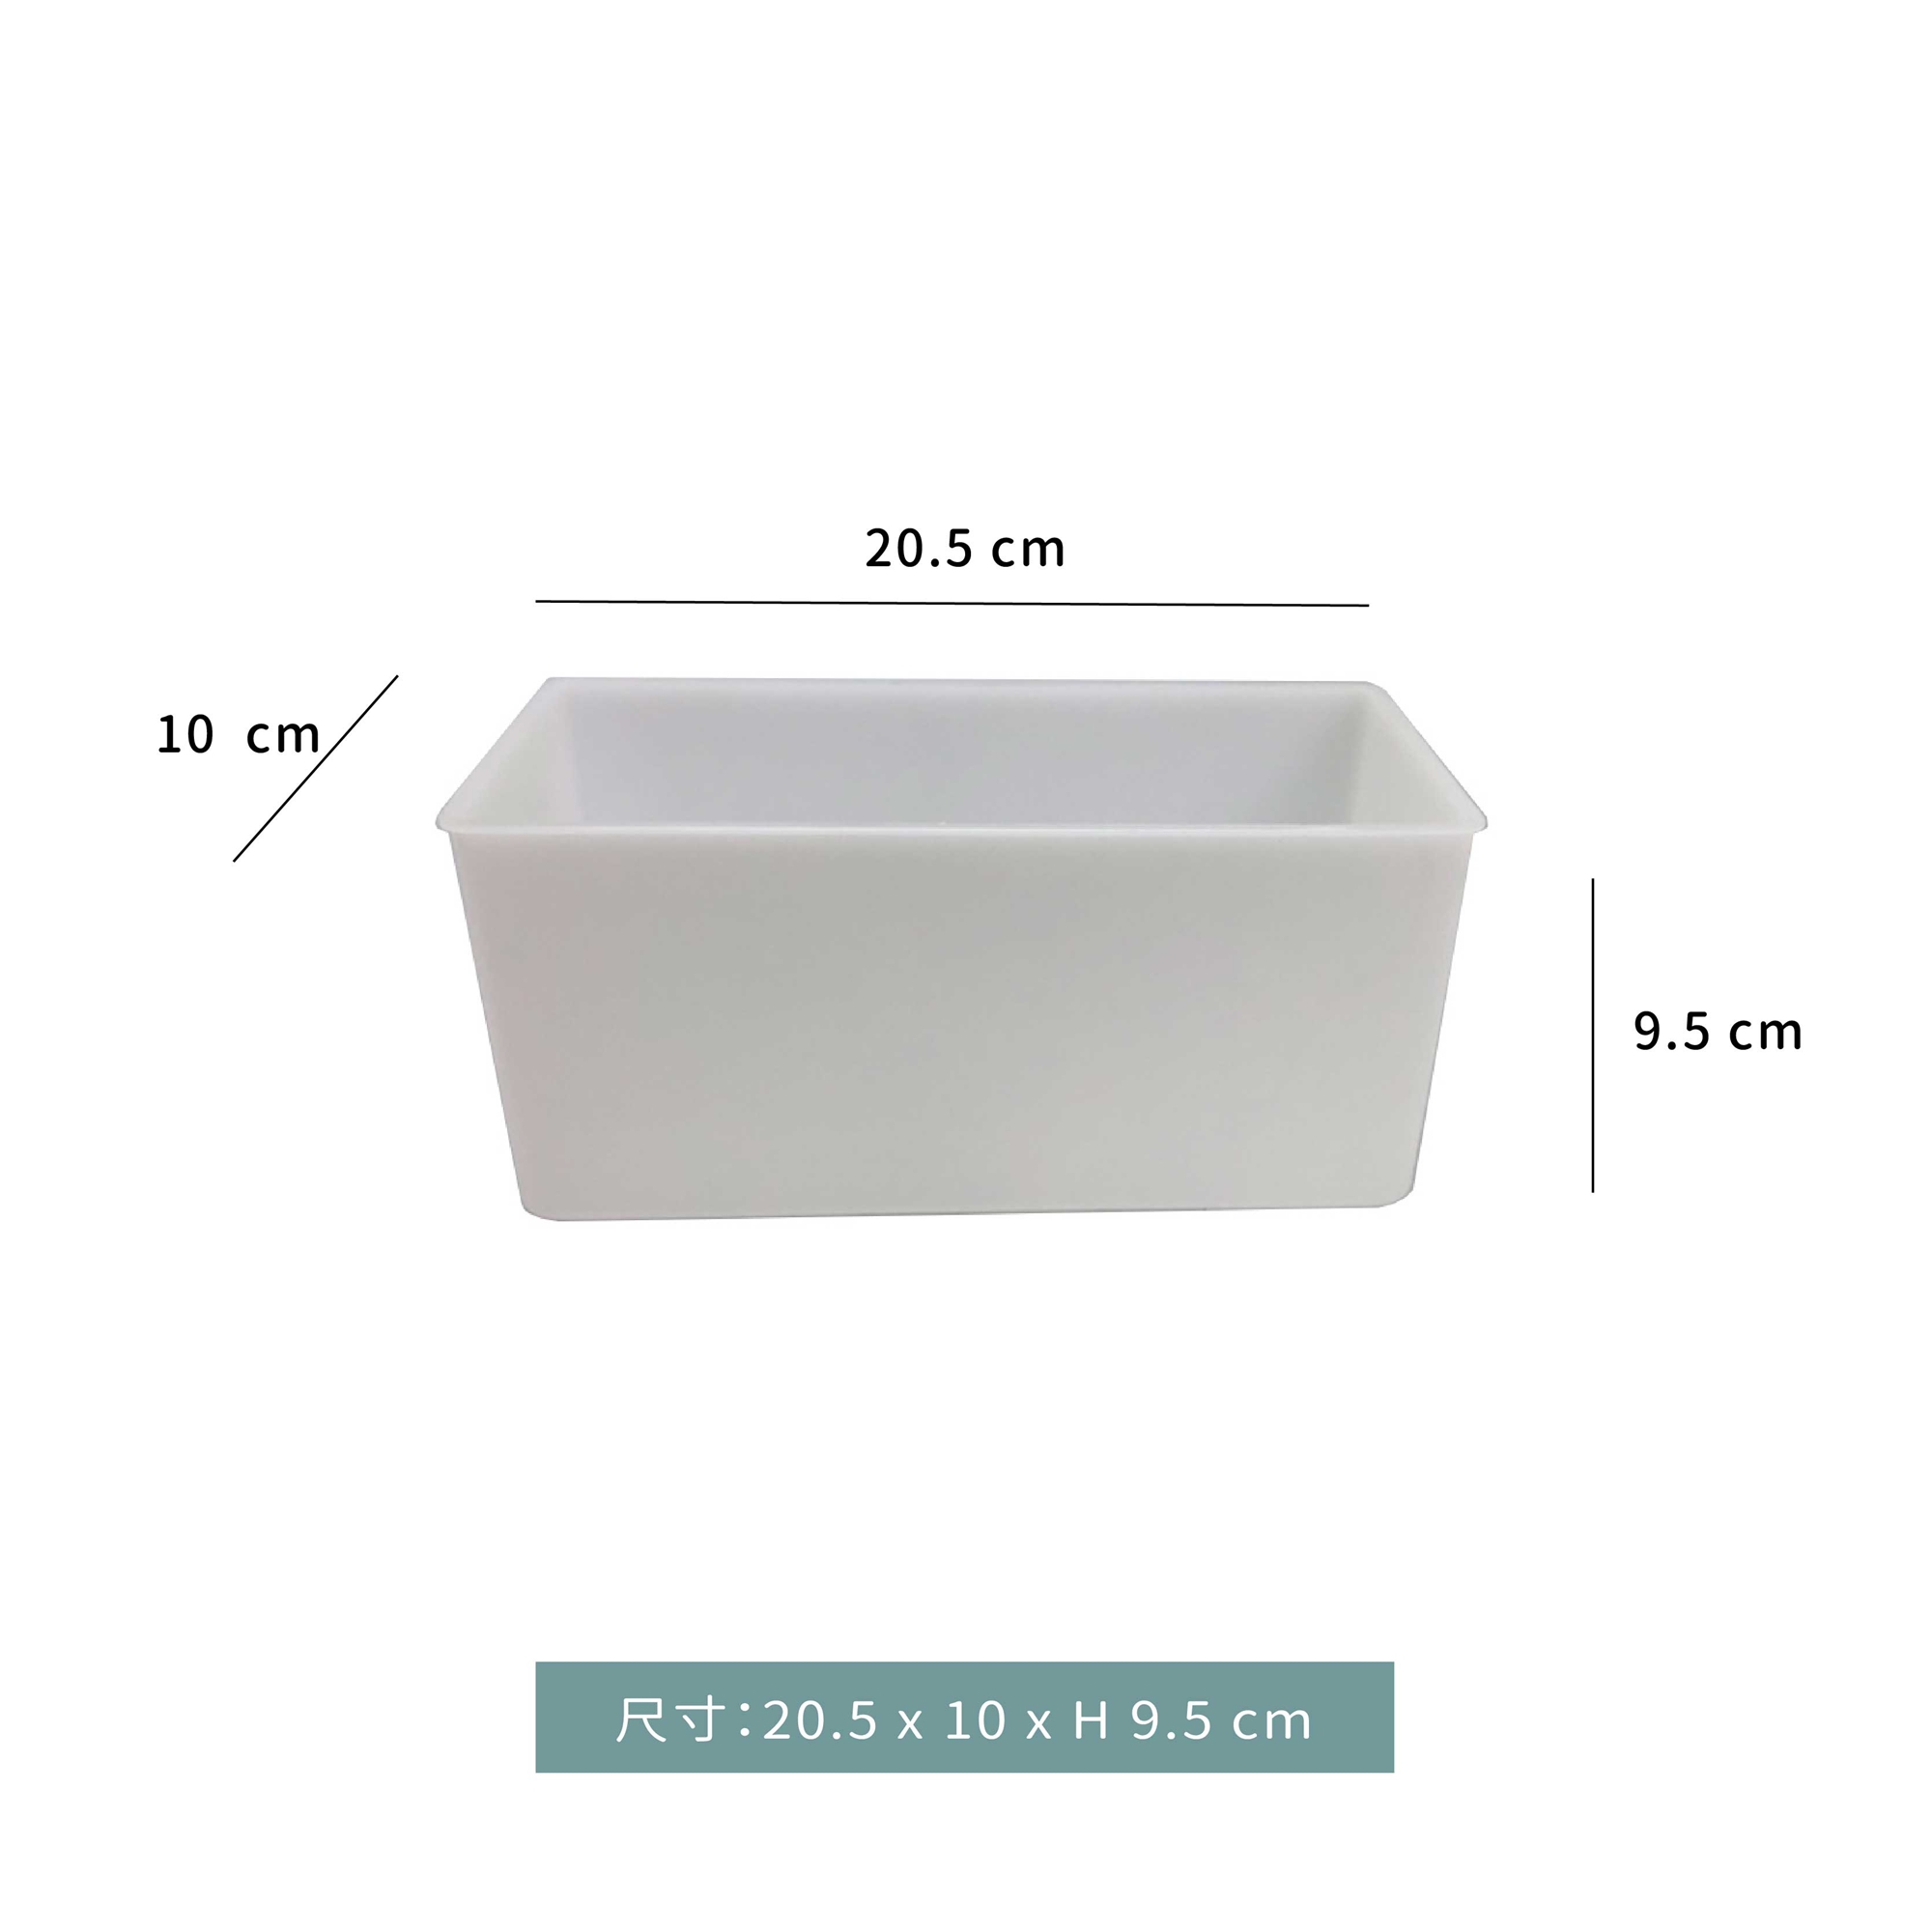 製冰盒  ☆新二代☆醉漢製冰盒-透明冰塊製冰器